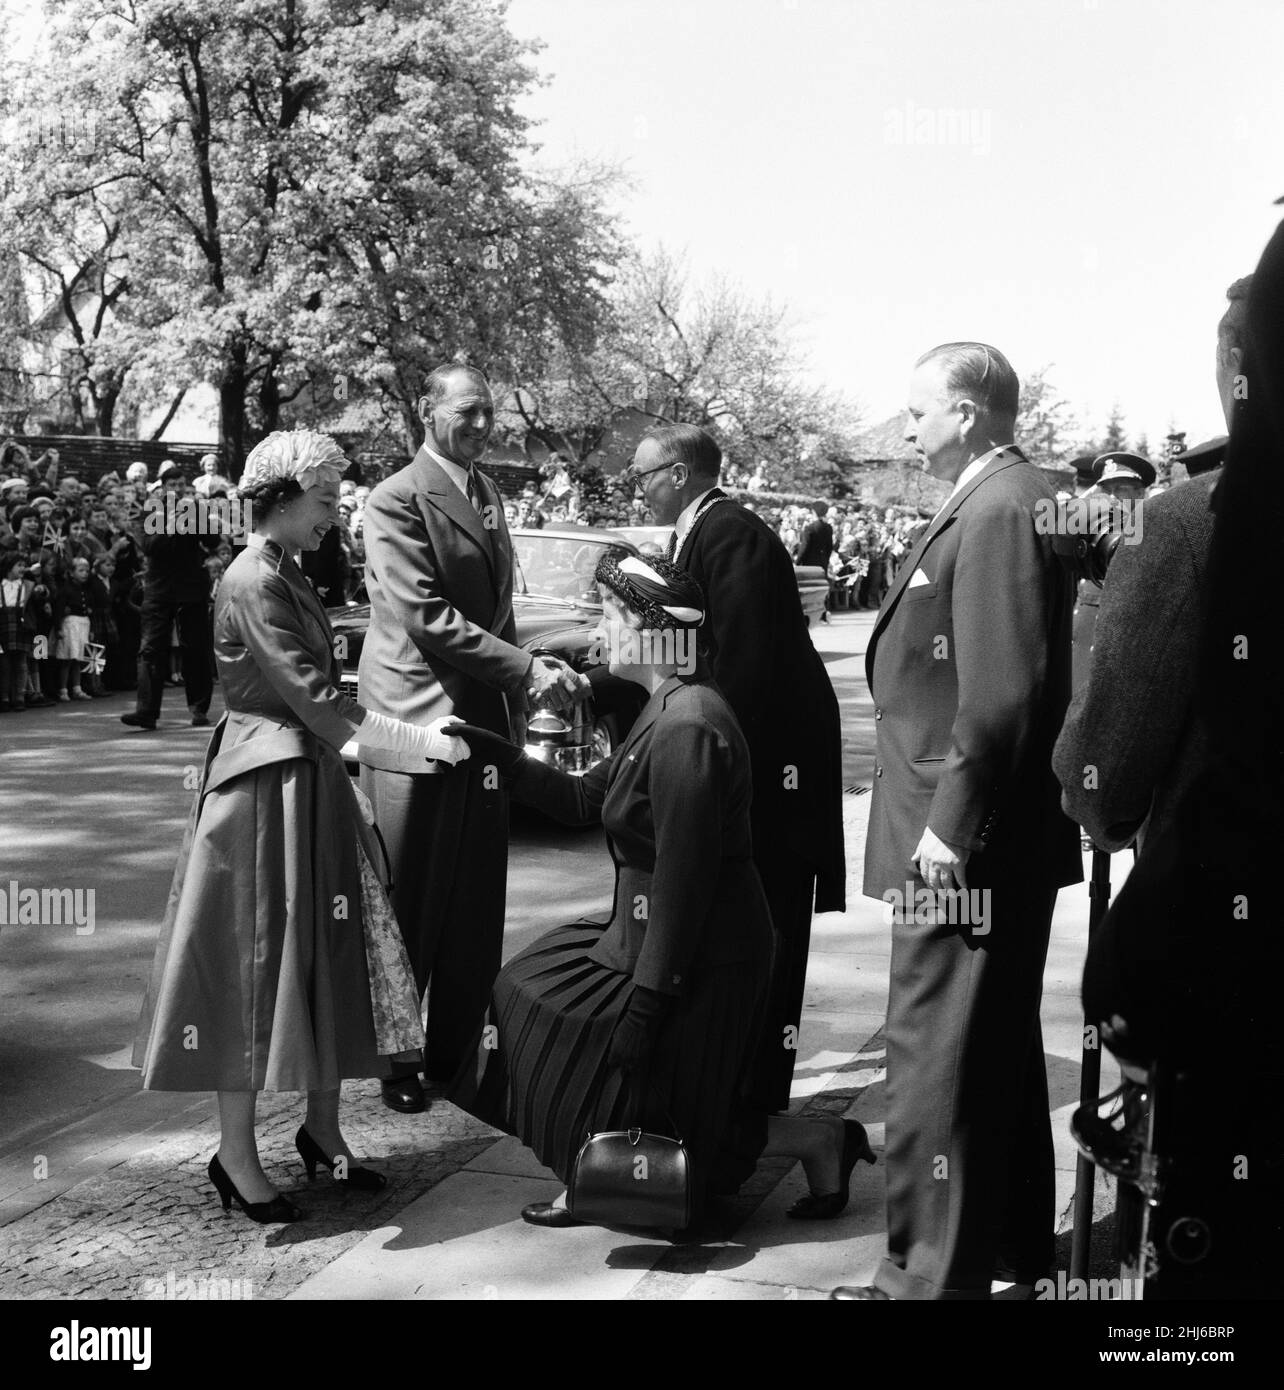 Königin Elizabeth II. Und Prinz Philip, Herzog von Edinburgh, besuchen Dänemark. Königin Elisabeth II. Kommt in der Skovgard-Schule an. Kopenhagen, Dänemark. 23rd Mai 1957. Stockfoto